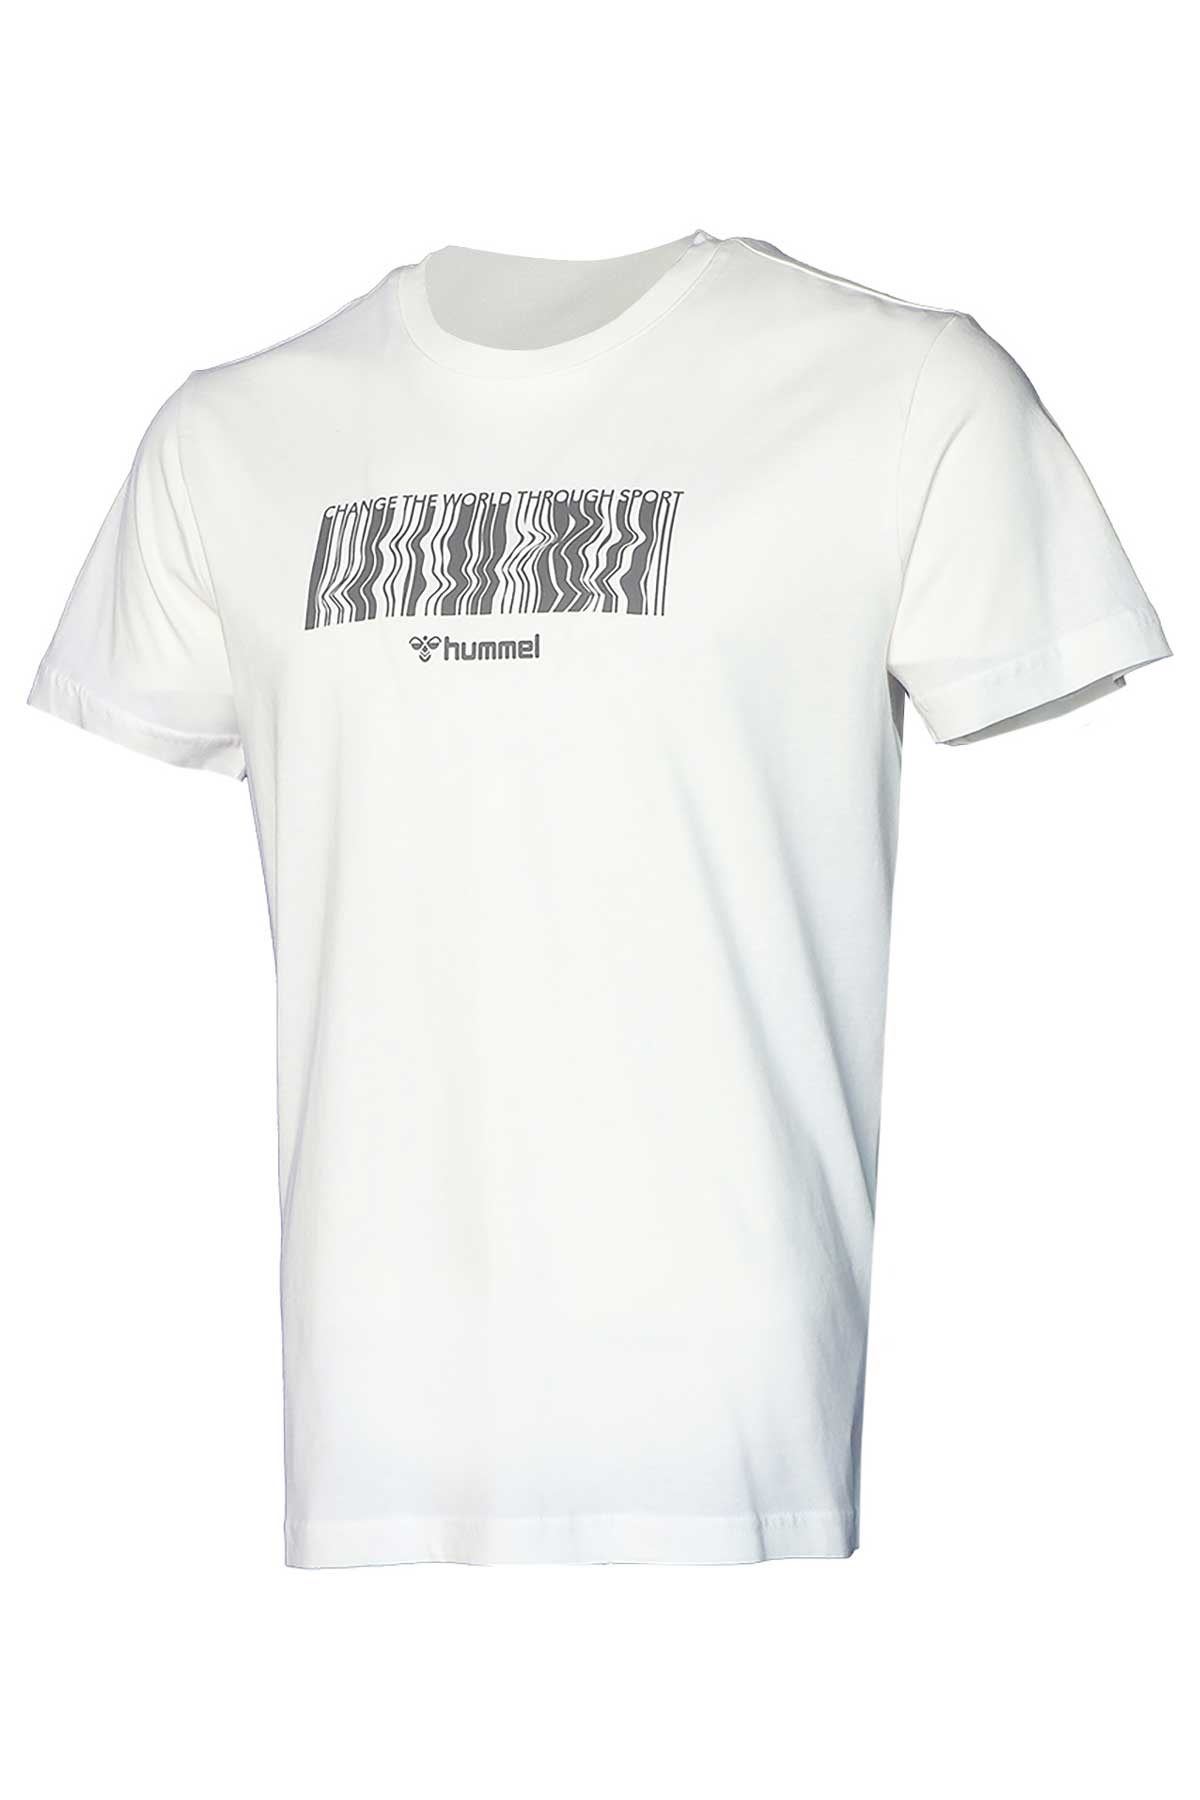 Hummel Hmlkalısta T-Shırt S/S Erkek Beyaz Tişört - 911642-9003